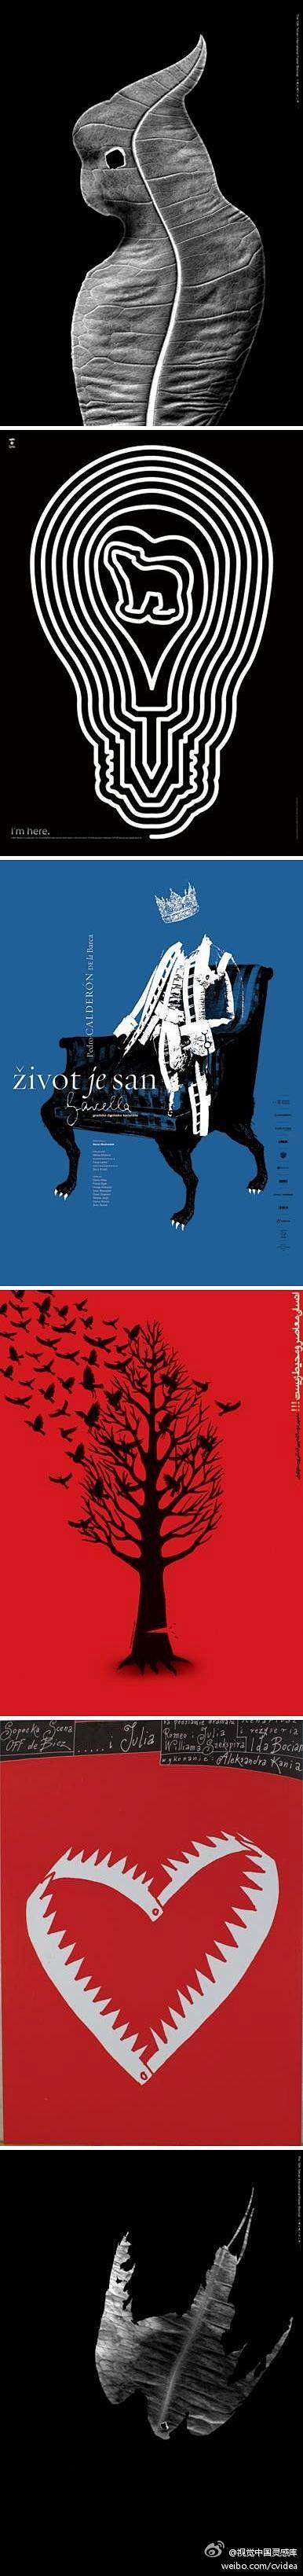 第十届德黑兰国际海报双年展获奖作品欣赏。...